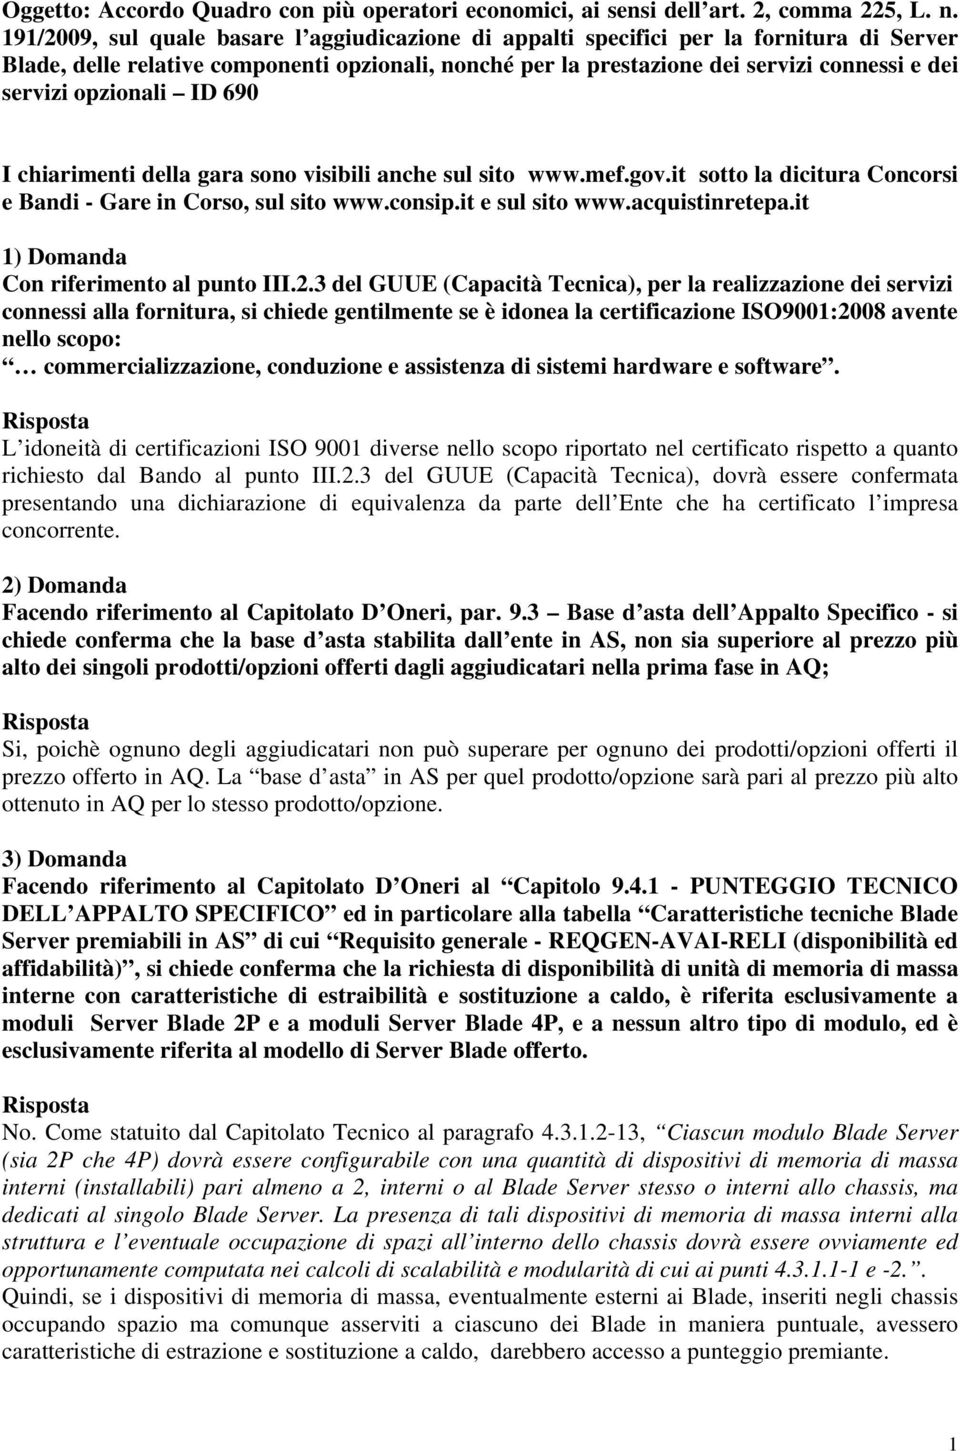 opzionali ID 690 I chiarimenti della gara sono visibili anche sul sito www.mef.gov.it sotto la dicitura Concorsi e Bandi - Gare in Corso, sul sito www.consip.it e sul sito www.acquistinretepa.